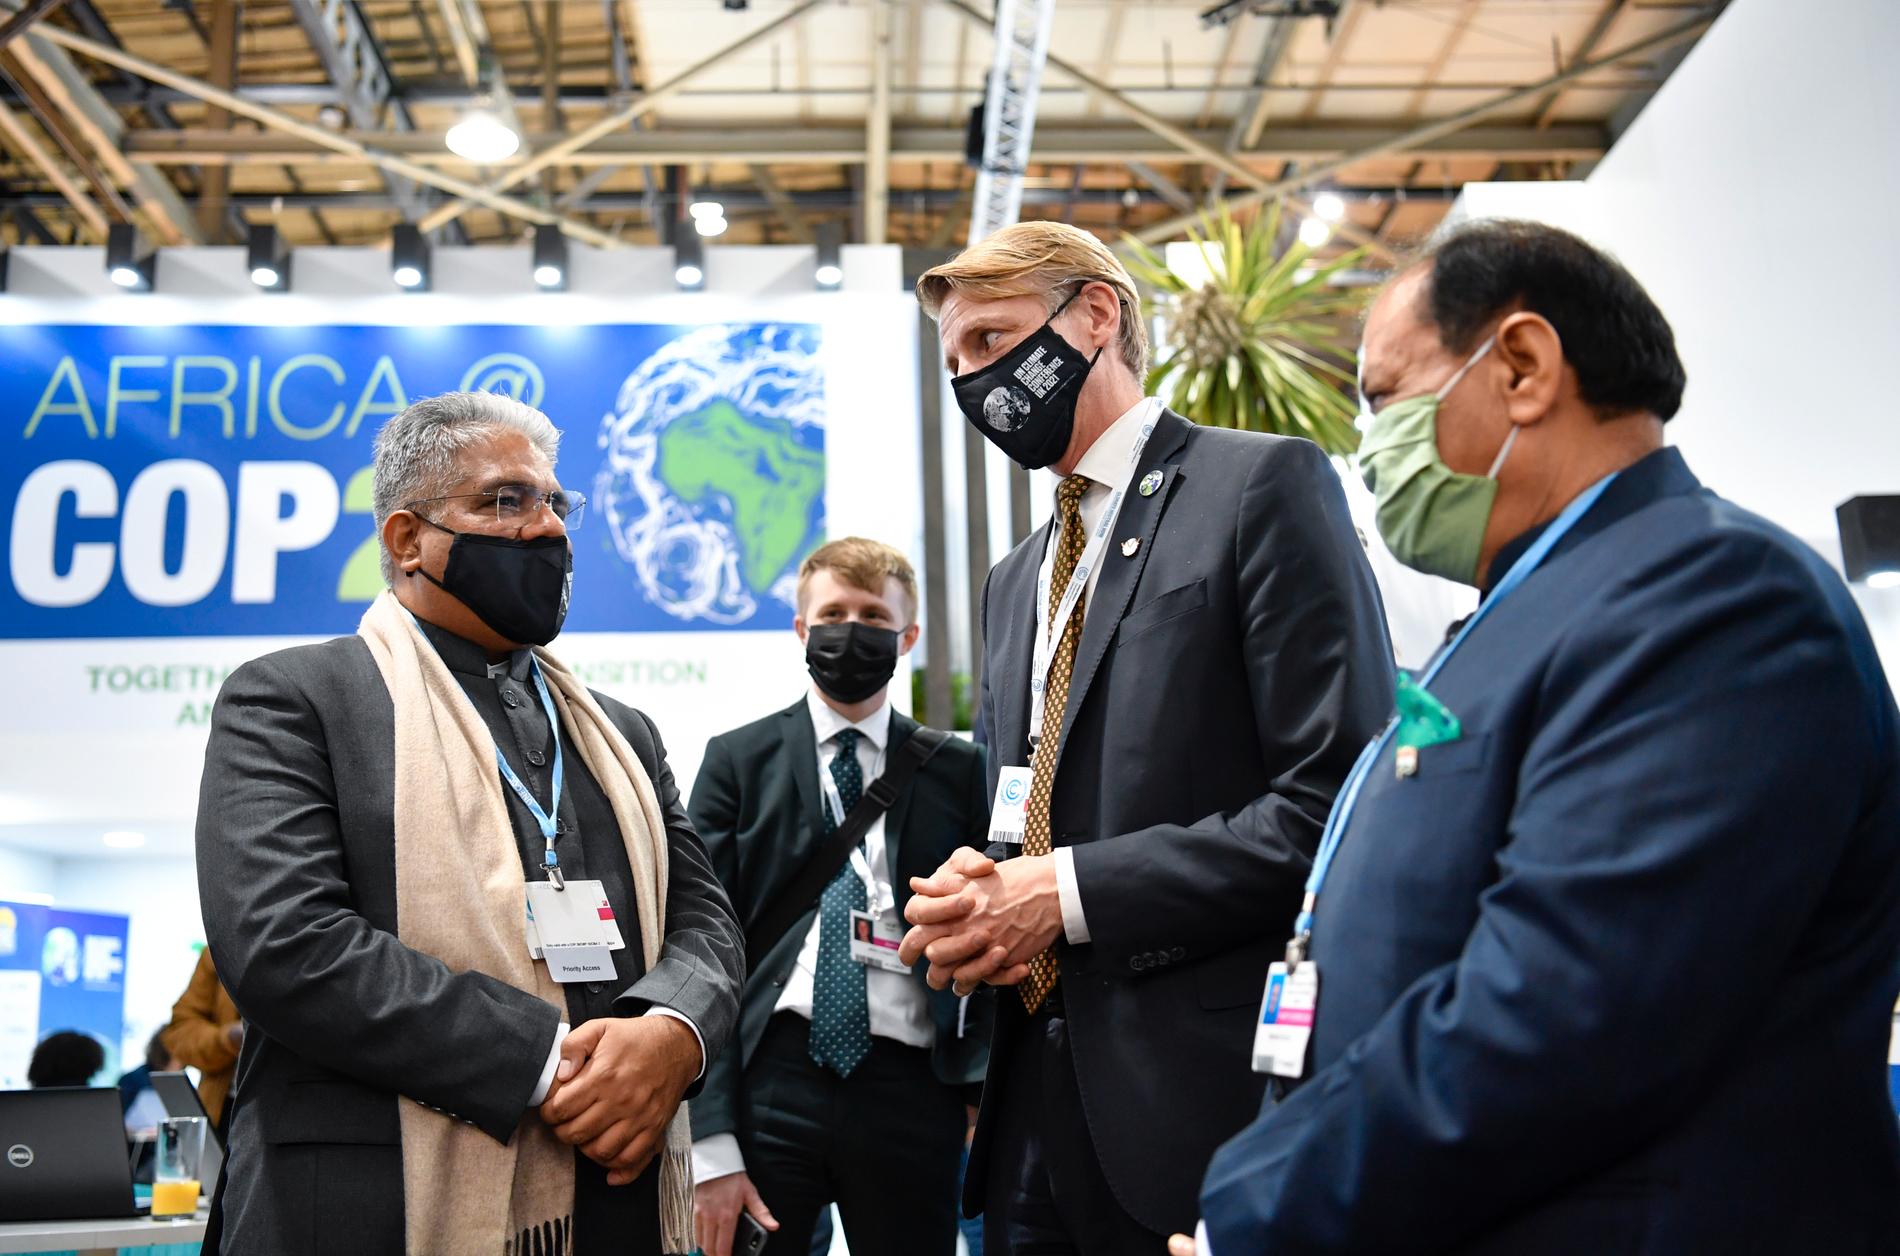 Klimat- och miljöminister Per Bolund i samtal med Indiens klimat- och miljöminister Bhupender Yadav (till vänster) under FN:s toppmöte om klimatet, COP26, i Glasgow.